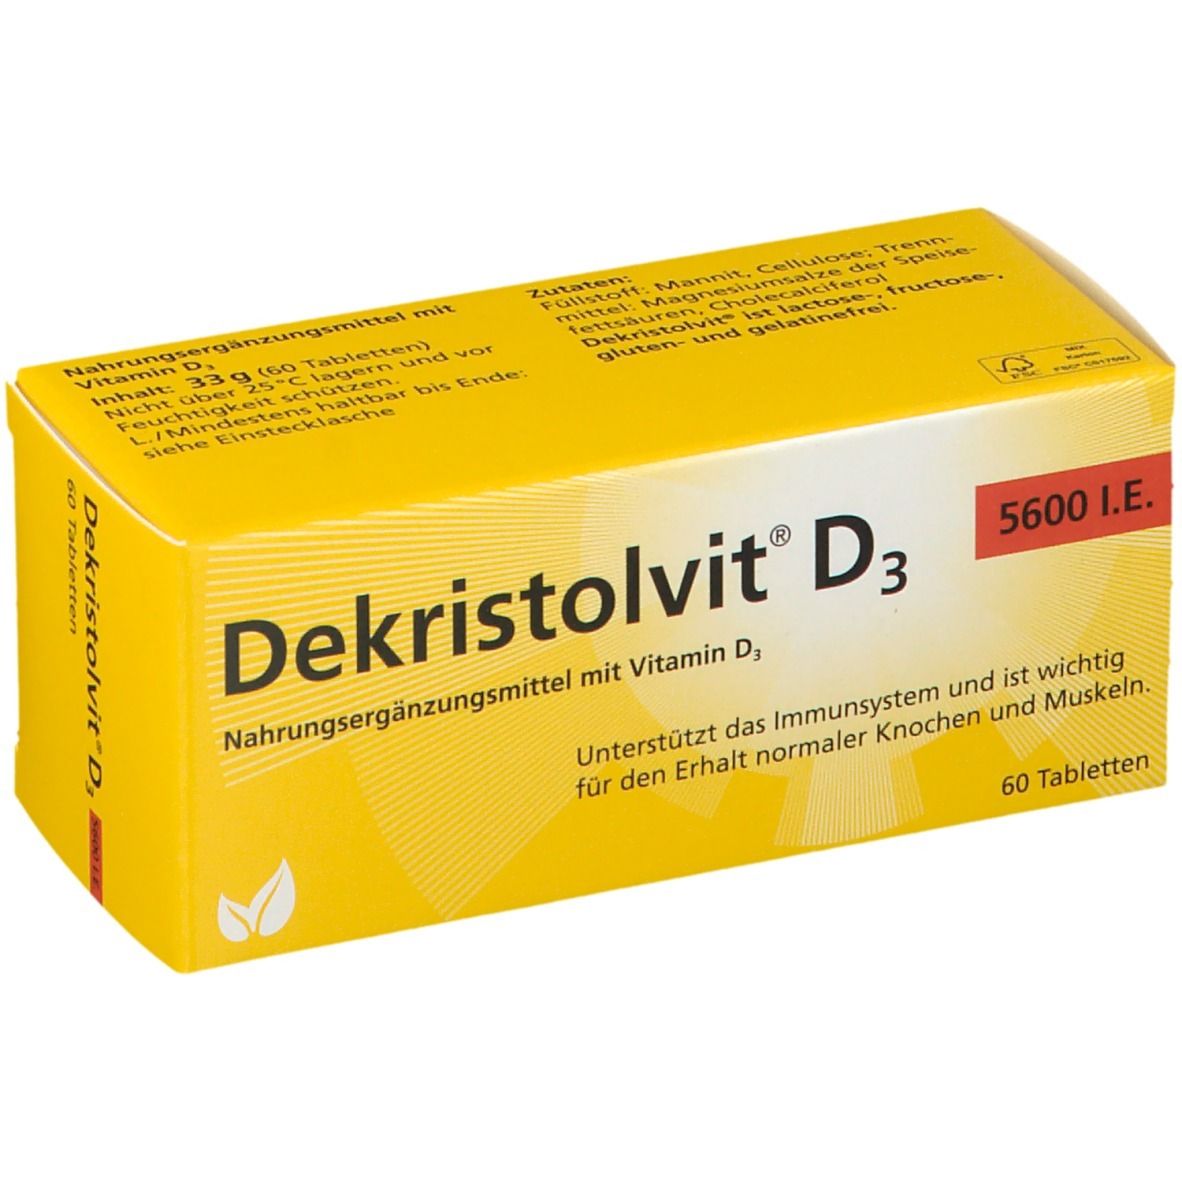 Dekristolvit® D3 5.600 I.E.